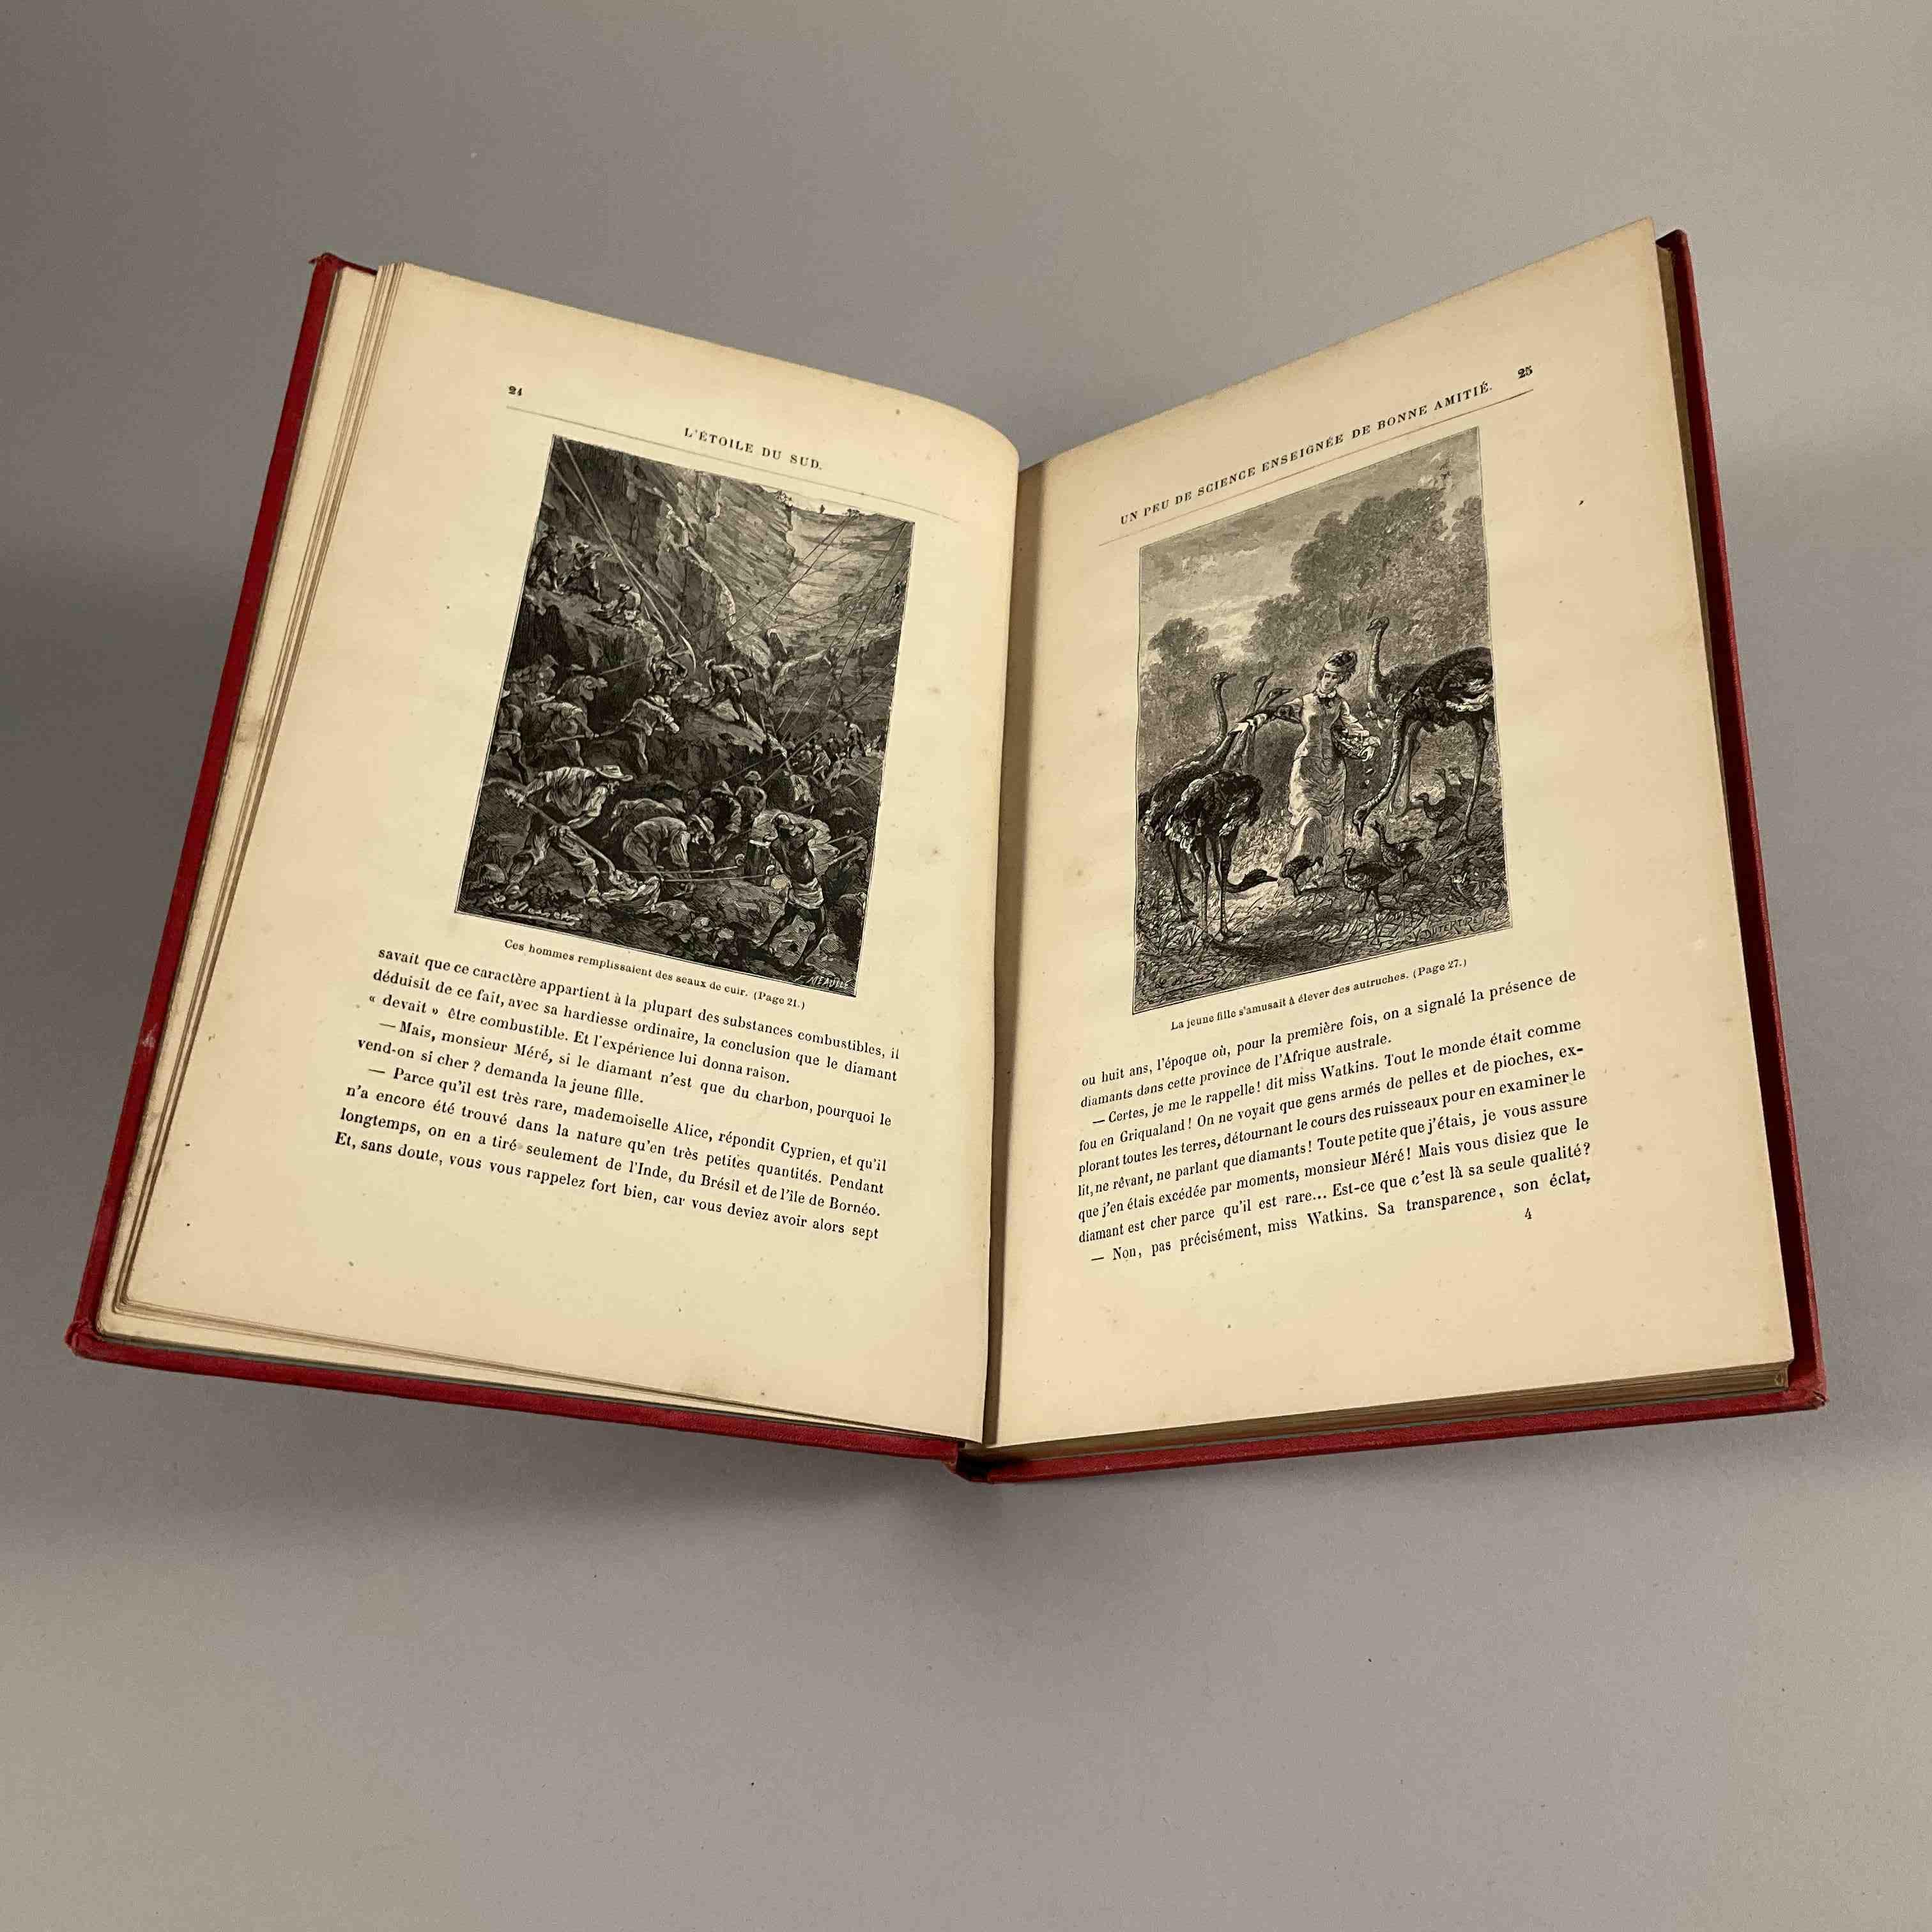 Jules Verne, L étoile du sud.
Paris, Hetzel, sd. Catalogue CH...